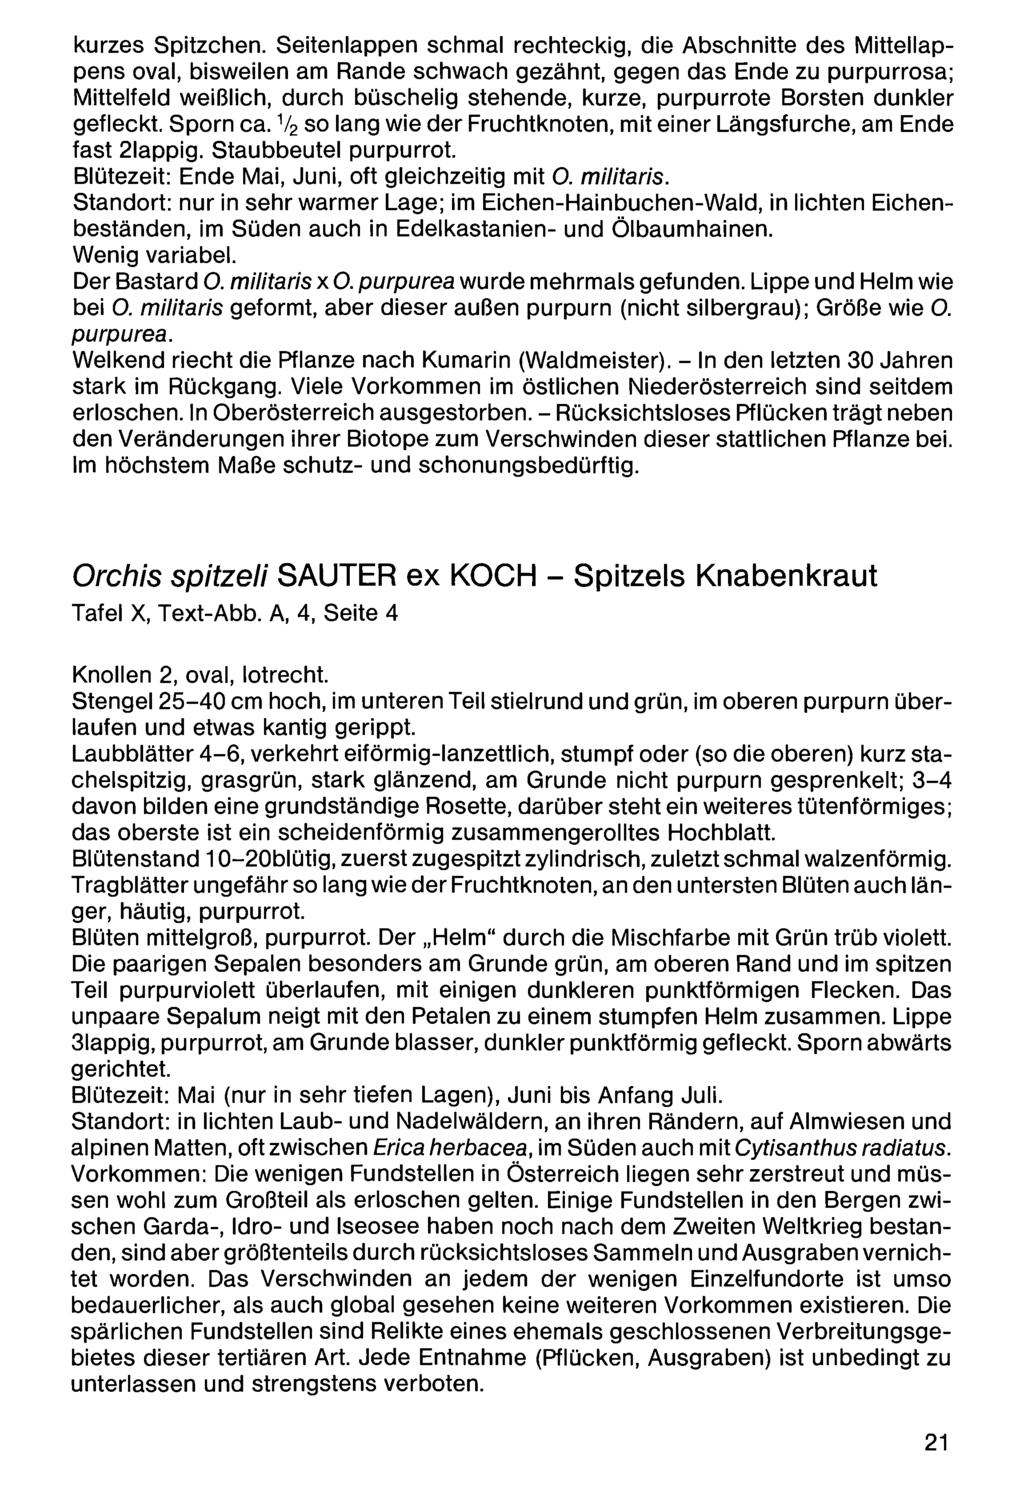 kurzes Spitzchen. Seitenlappen Zool.-Bot. Ges. Österreich, schmal Austria; download rechteckig, unter www.biologiezentrum.